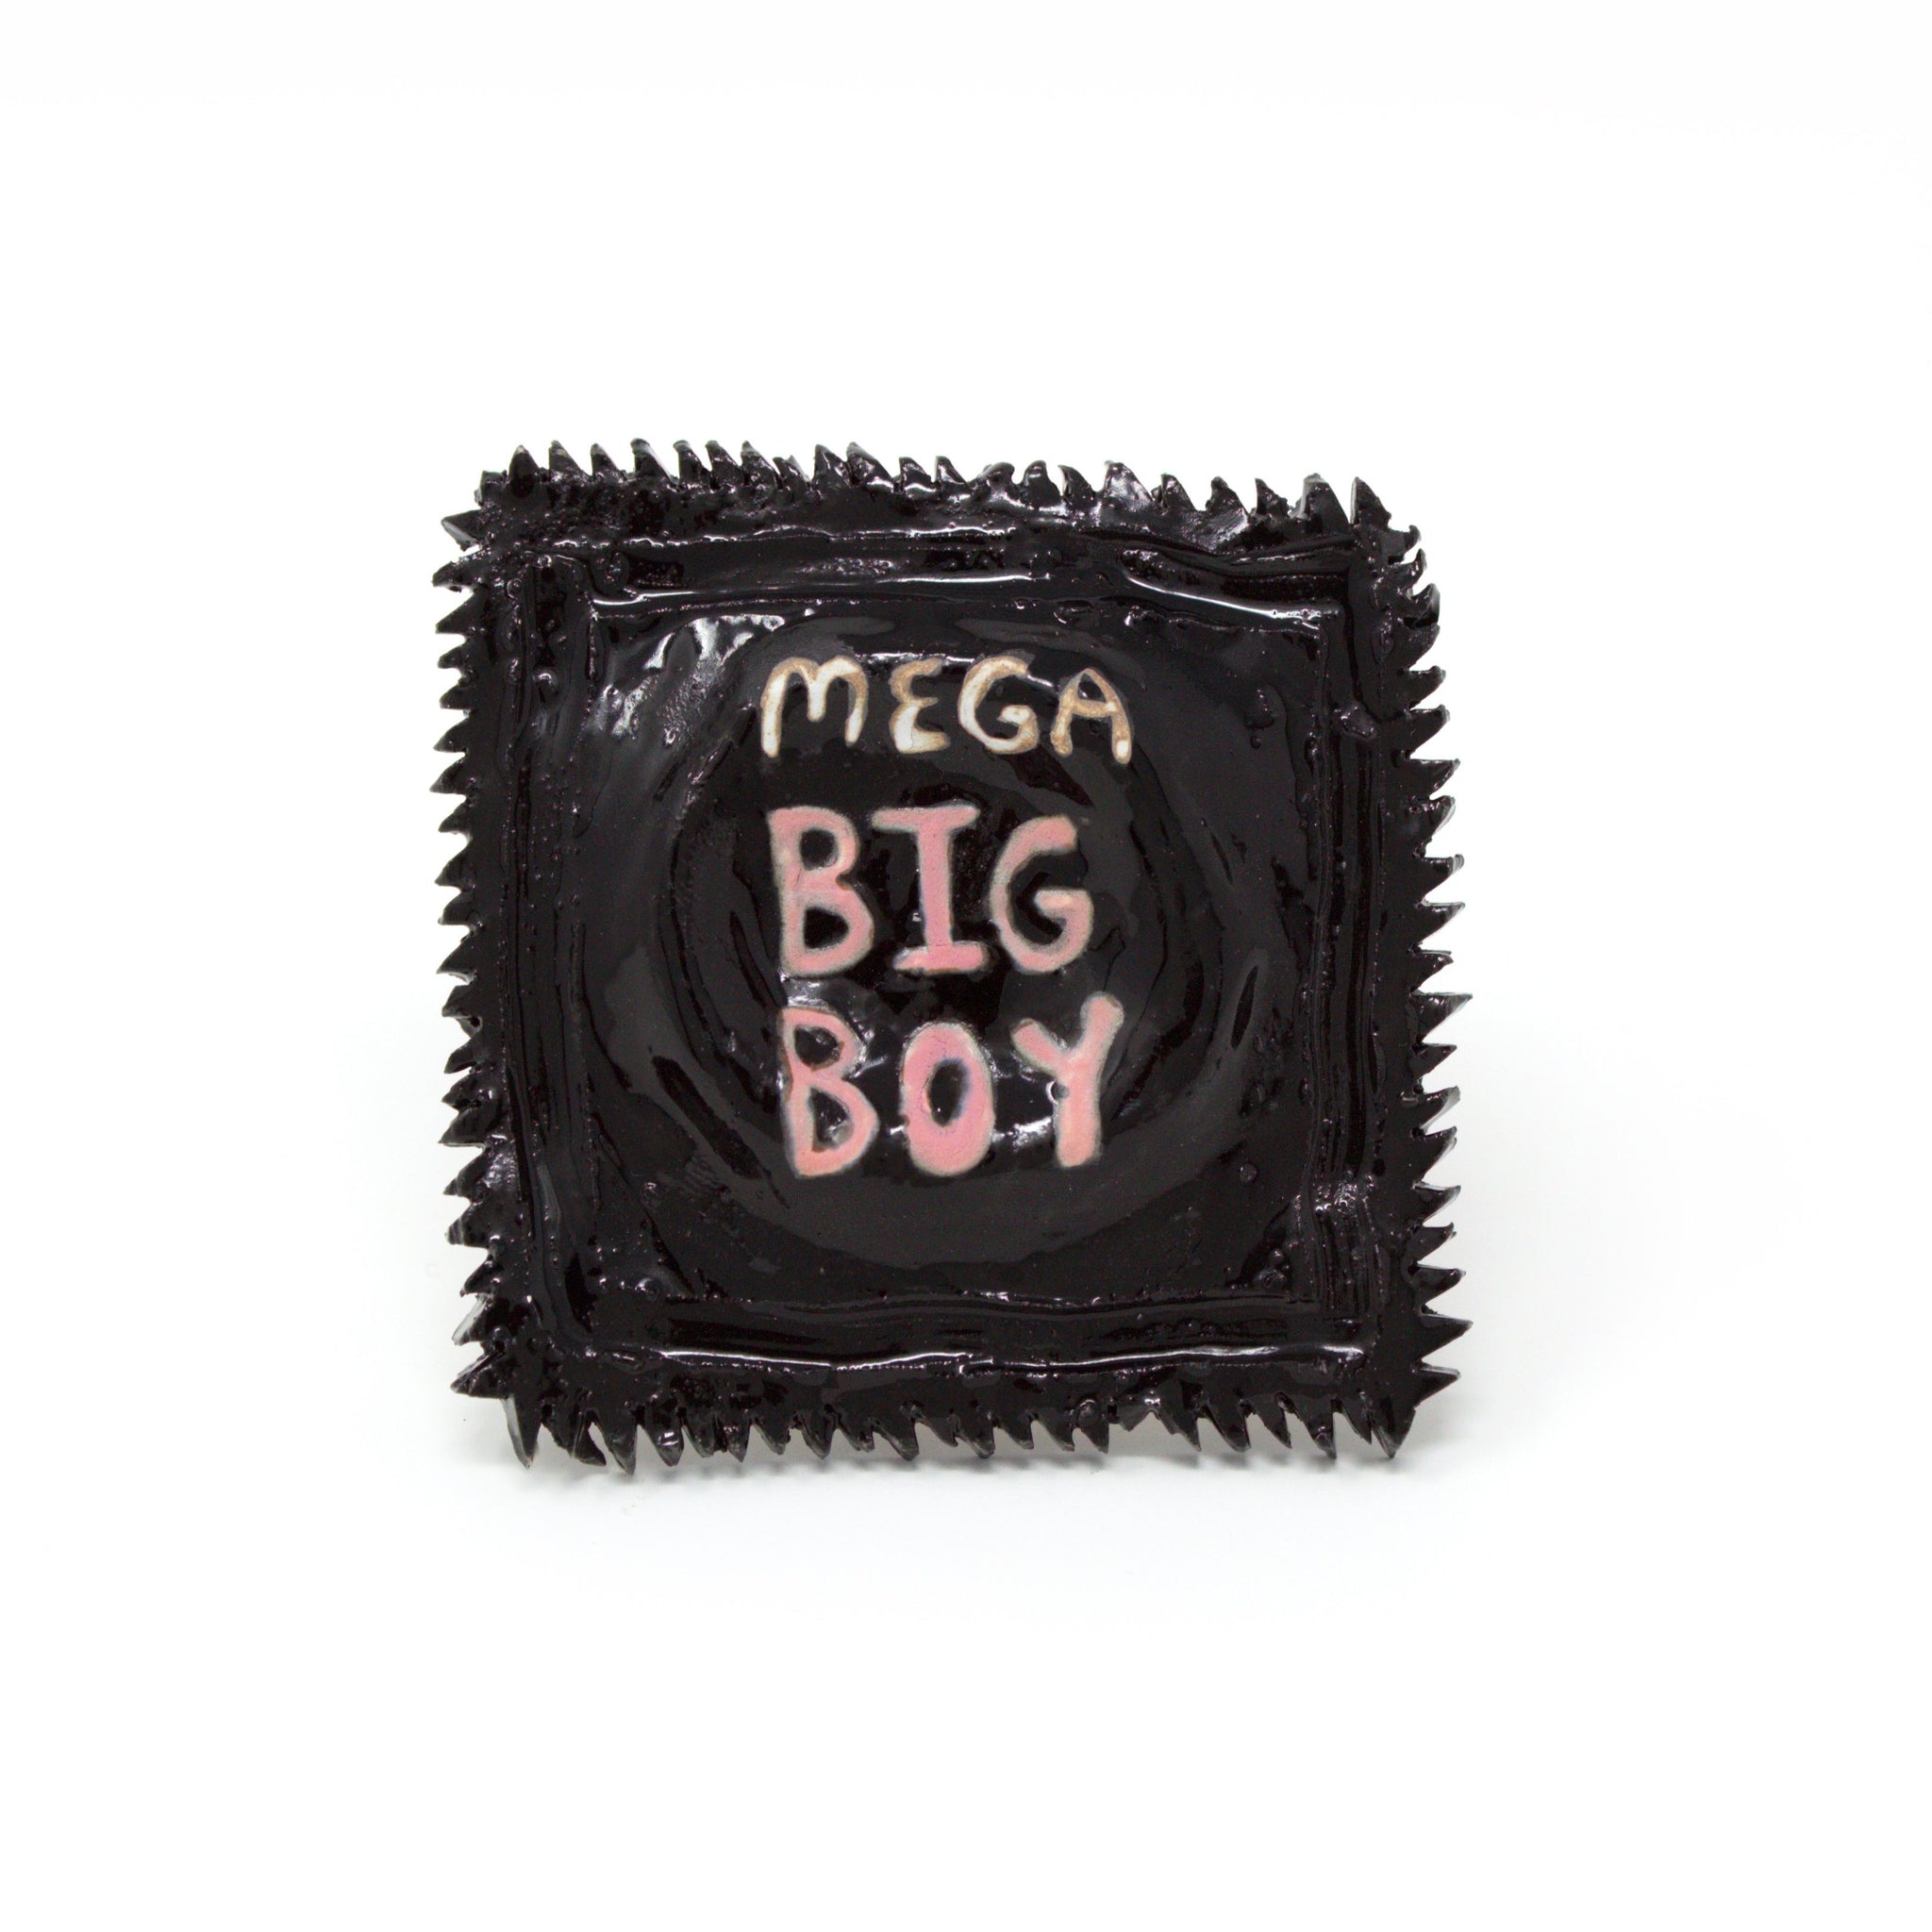 Colin J. Radcliffe, "Mega Big Boy Condom" SOLD